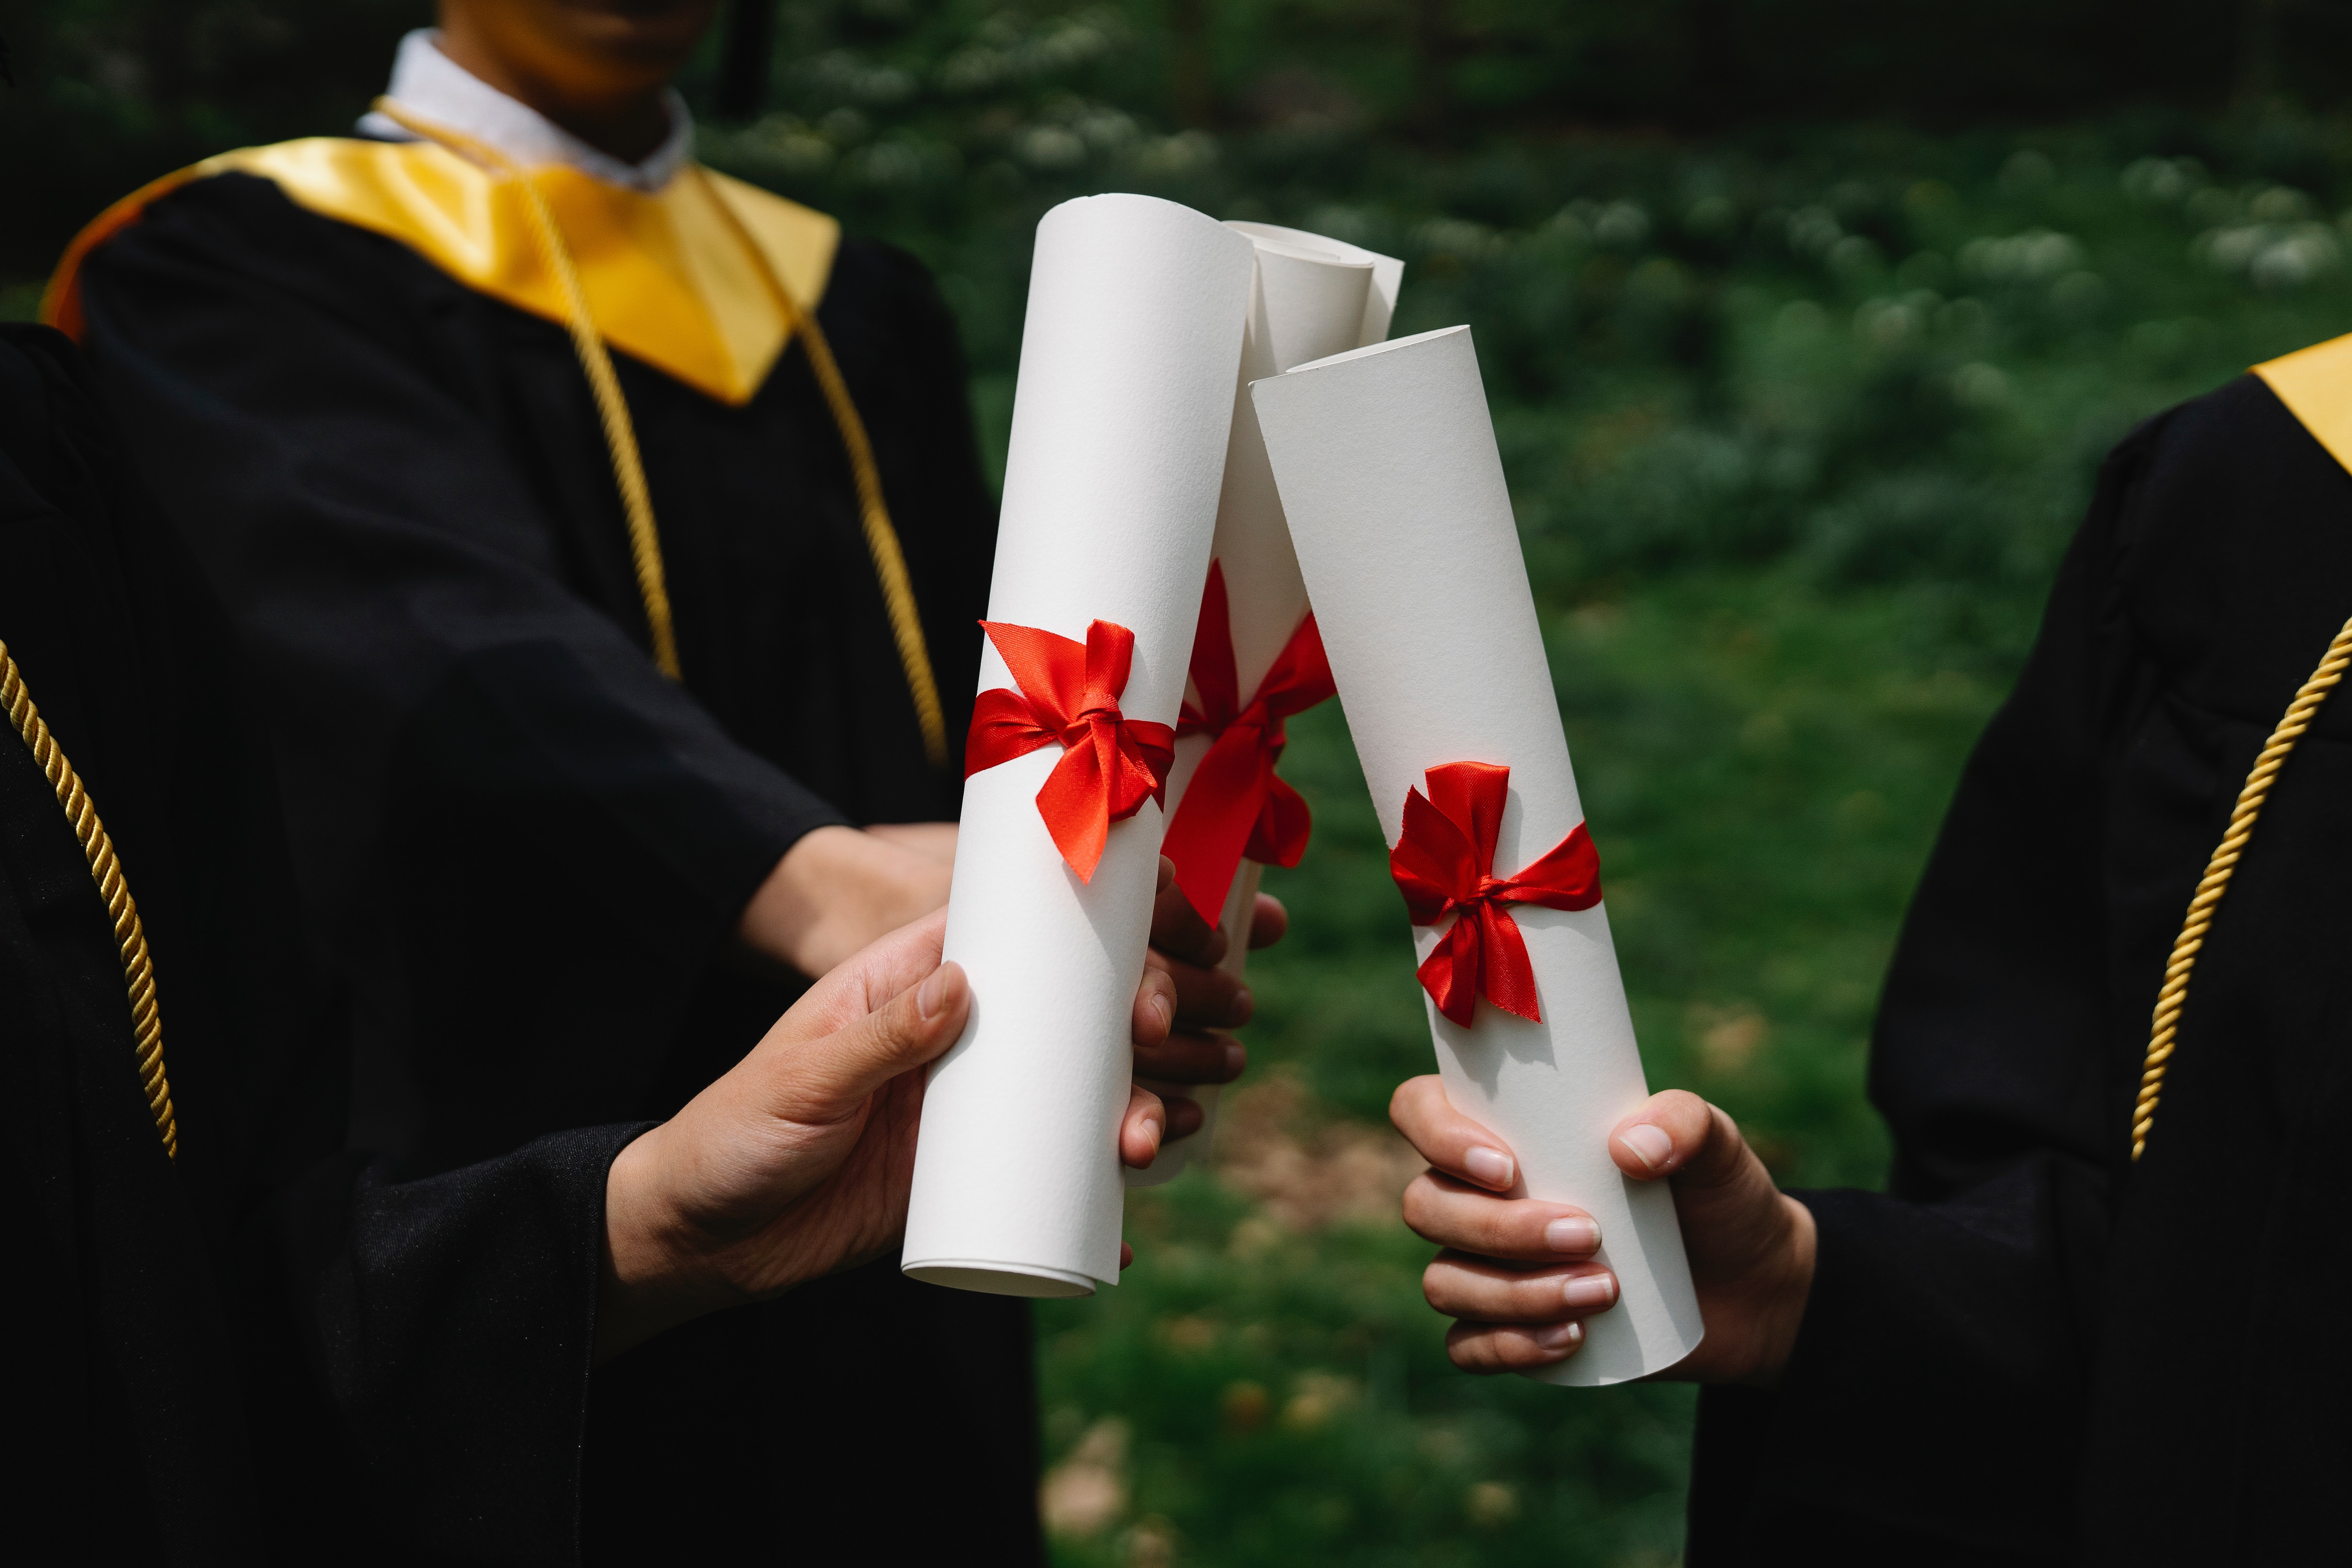 La imagen muestra a unos recién graduados mostrando sus diplomas.